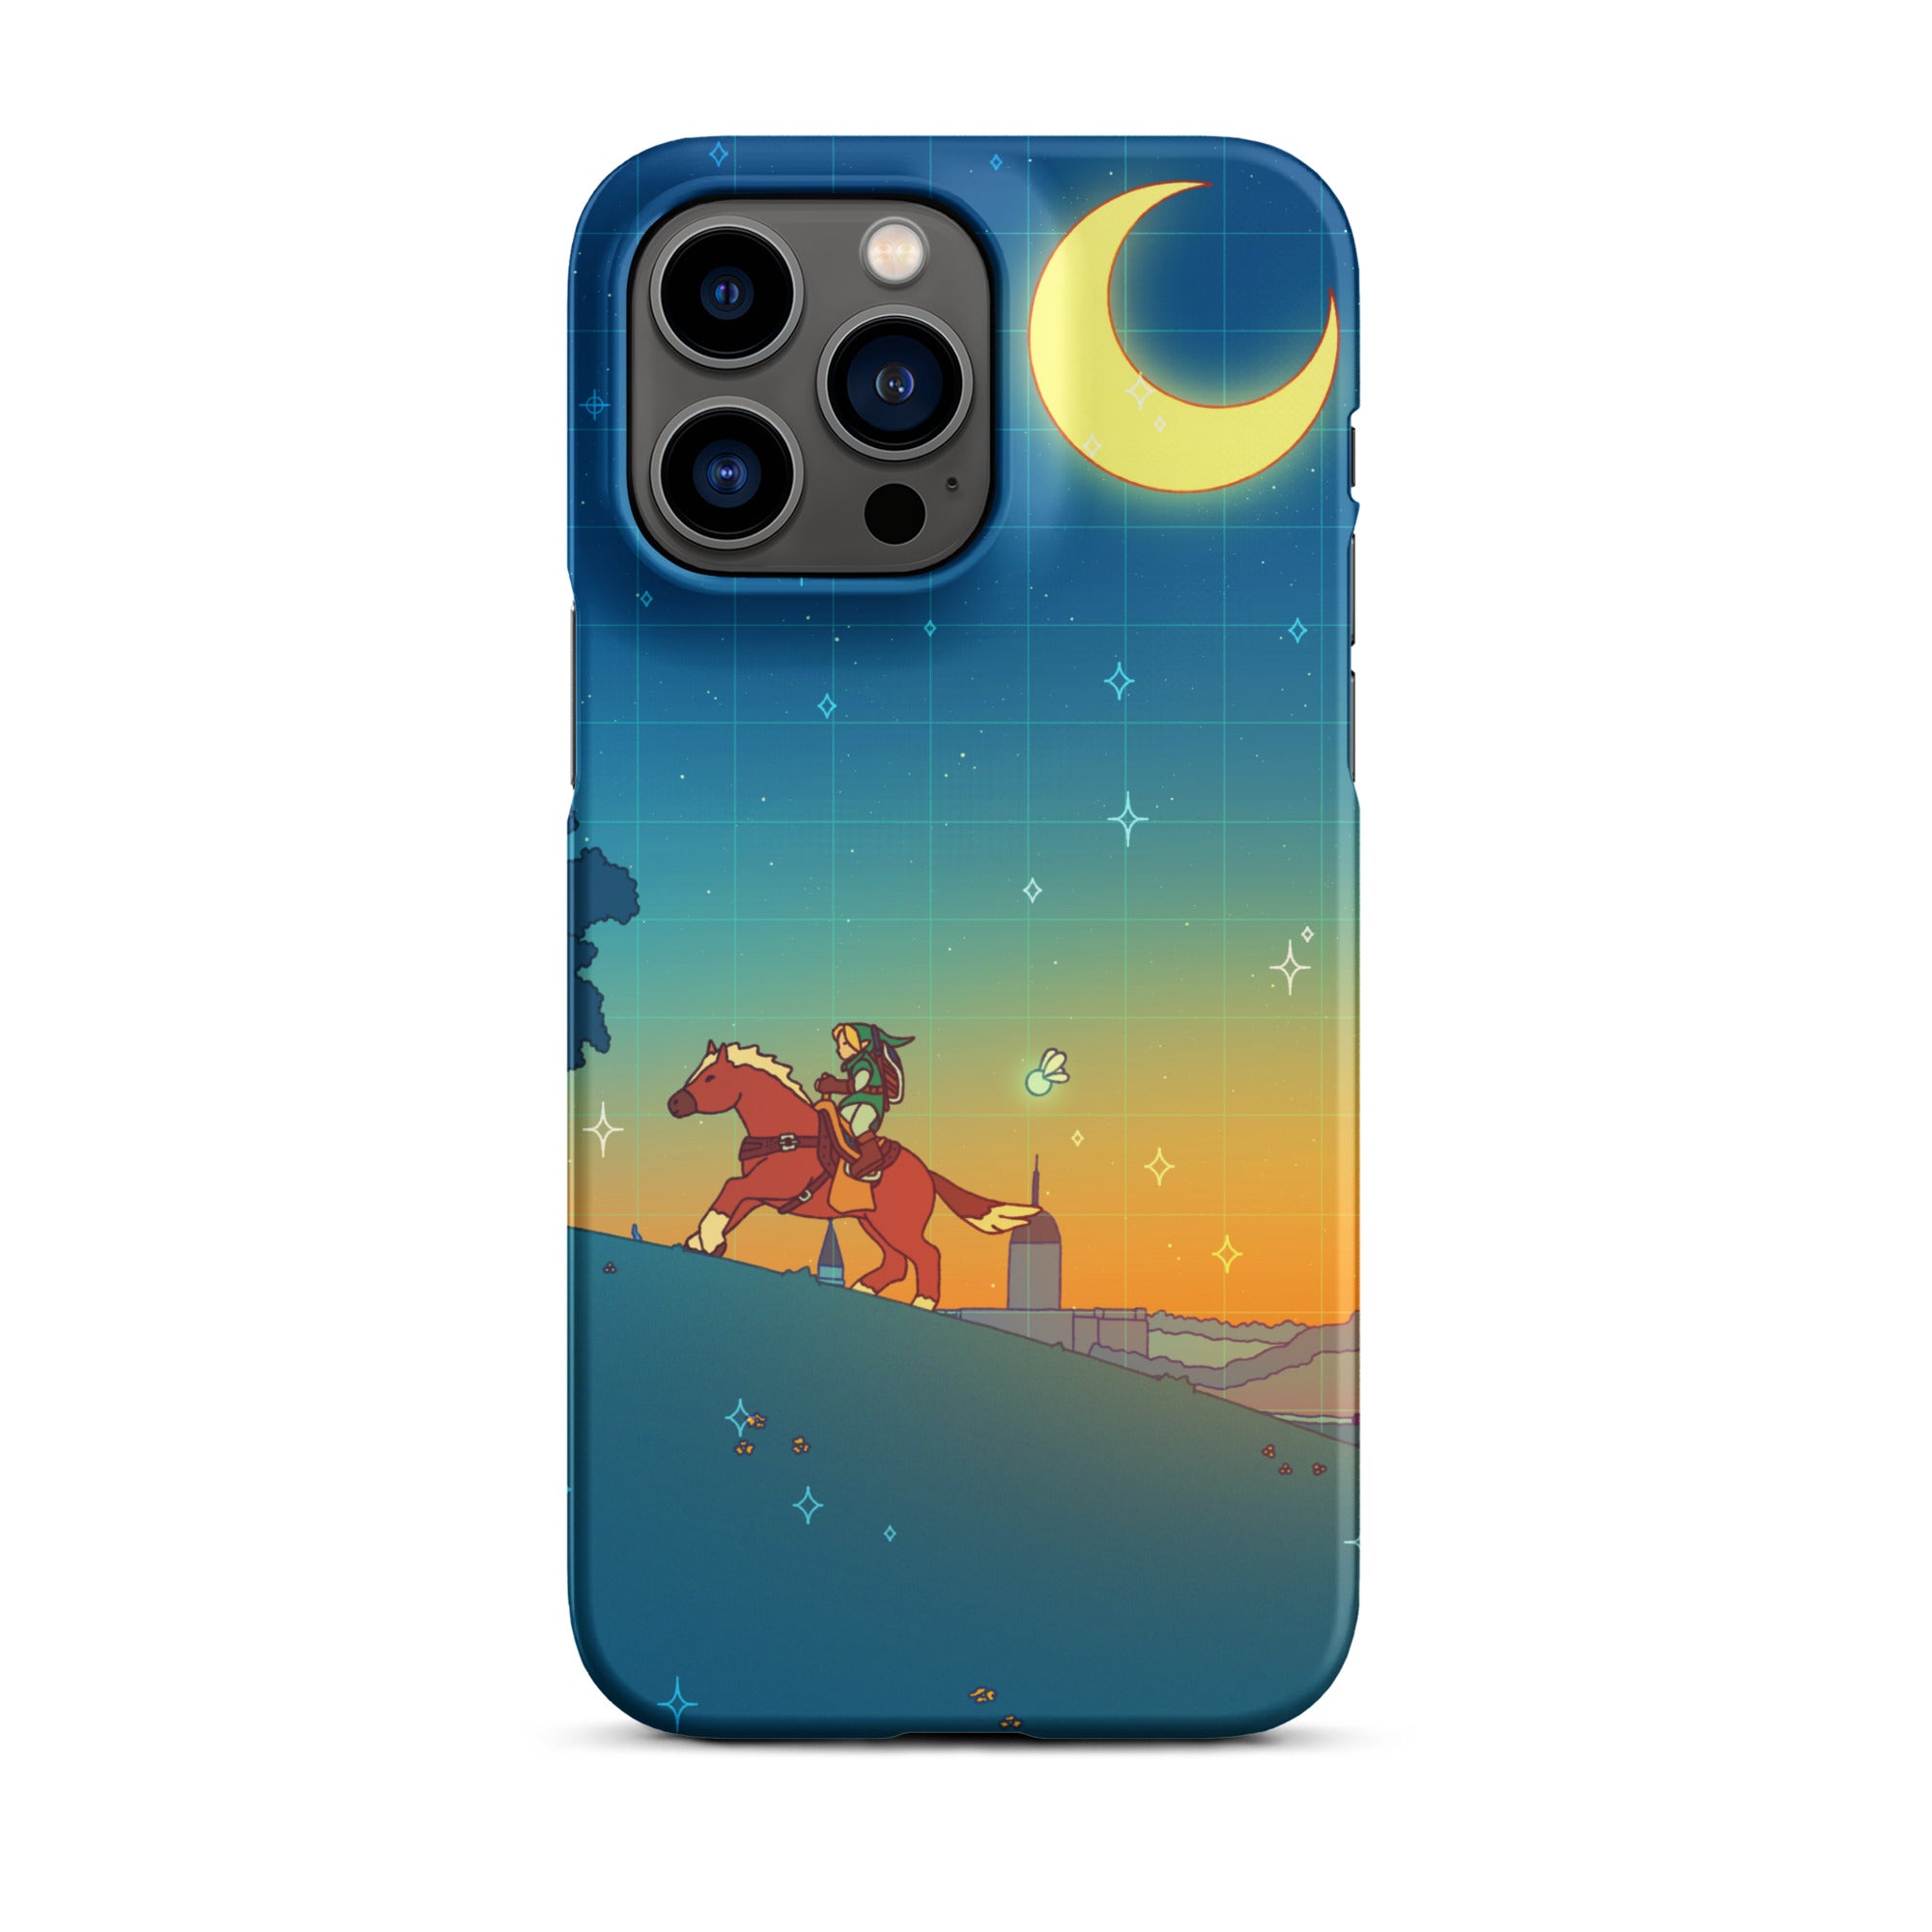 Ocarina Hill iPhone Case